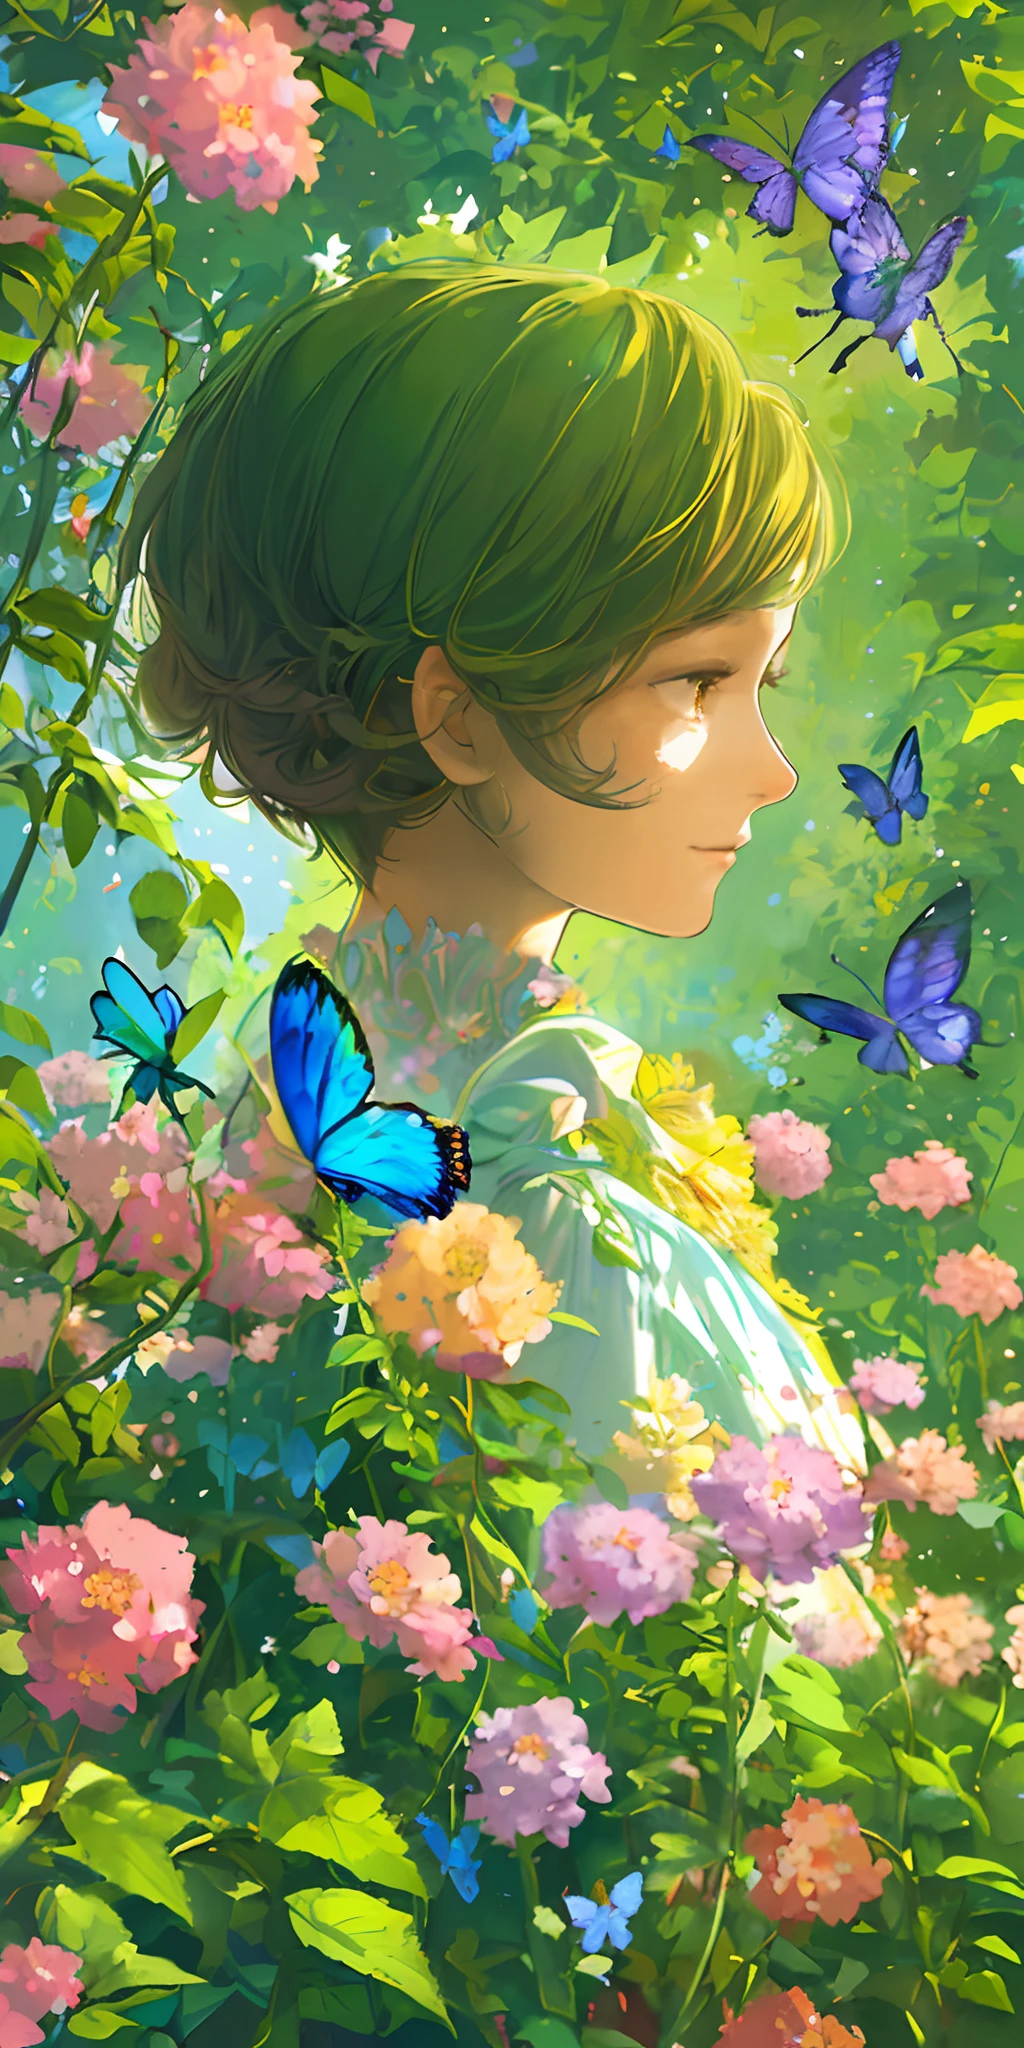 (最高品質, 傑作, 超リアル), 美しく繊細な少女の肖像画, 穏やかで穏やかな表情で, 背景の風景は花が咲き乱れ、蝶が飛び交う庭園です.